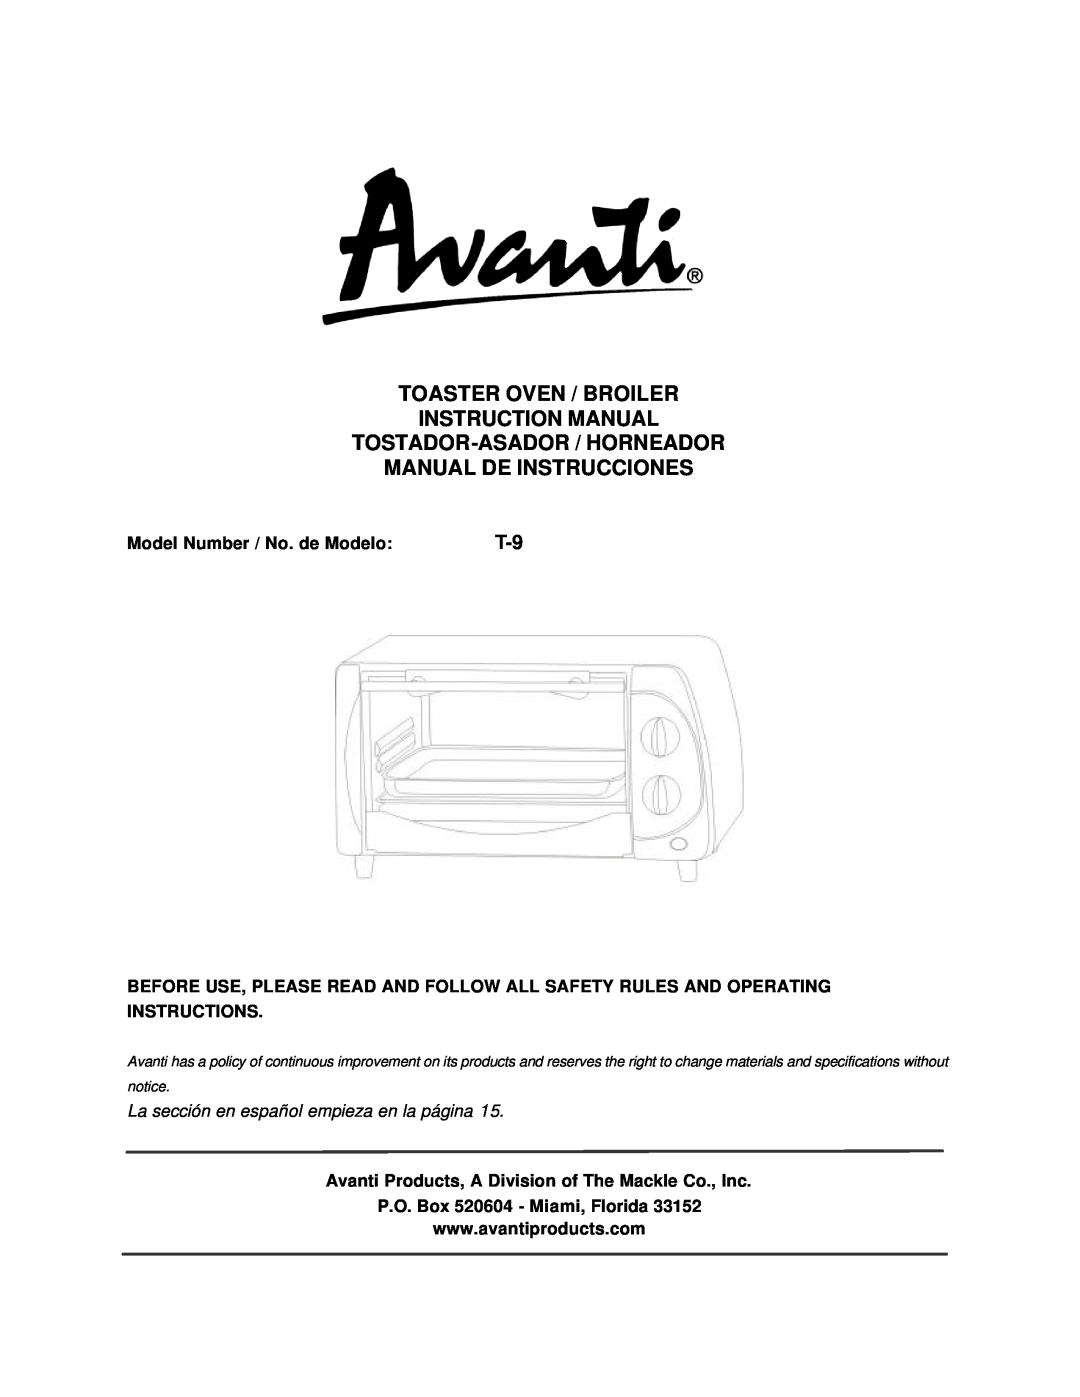 Avanti T-9 instruction manual Manual De Instrucciones, Model Number / No. de Modelo, P.O. Box 520604 - Miami, Florida 